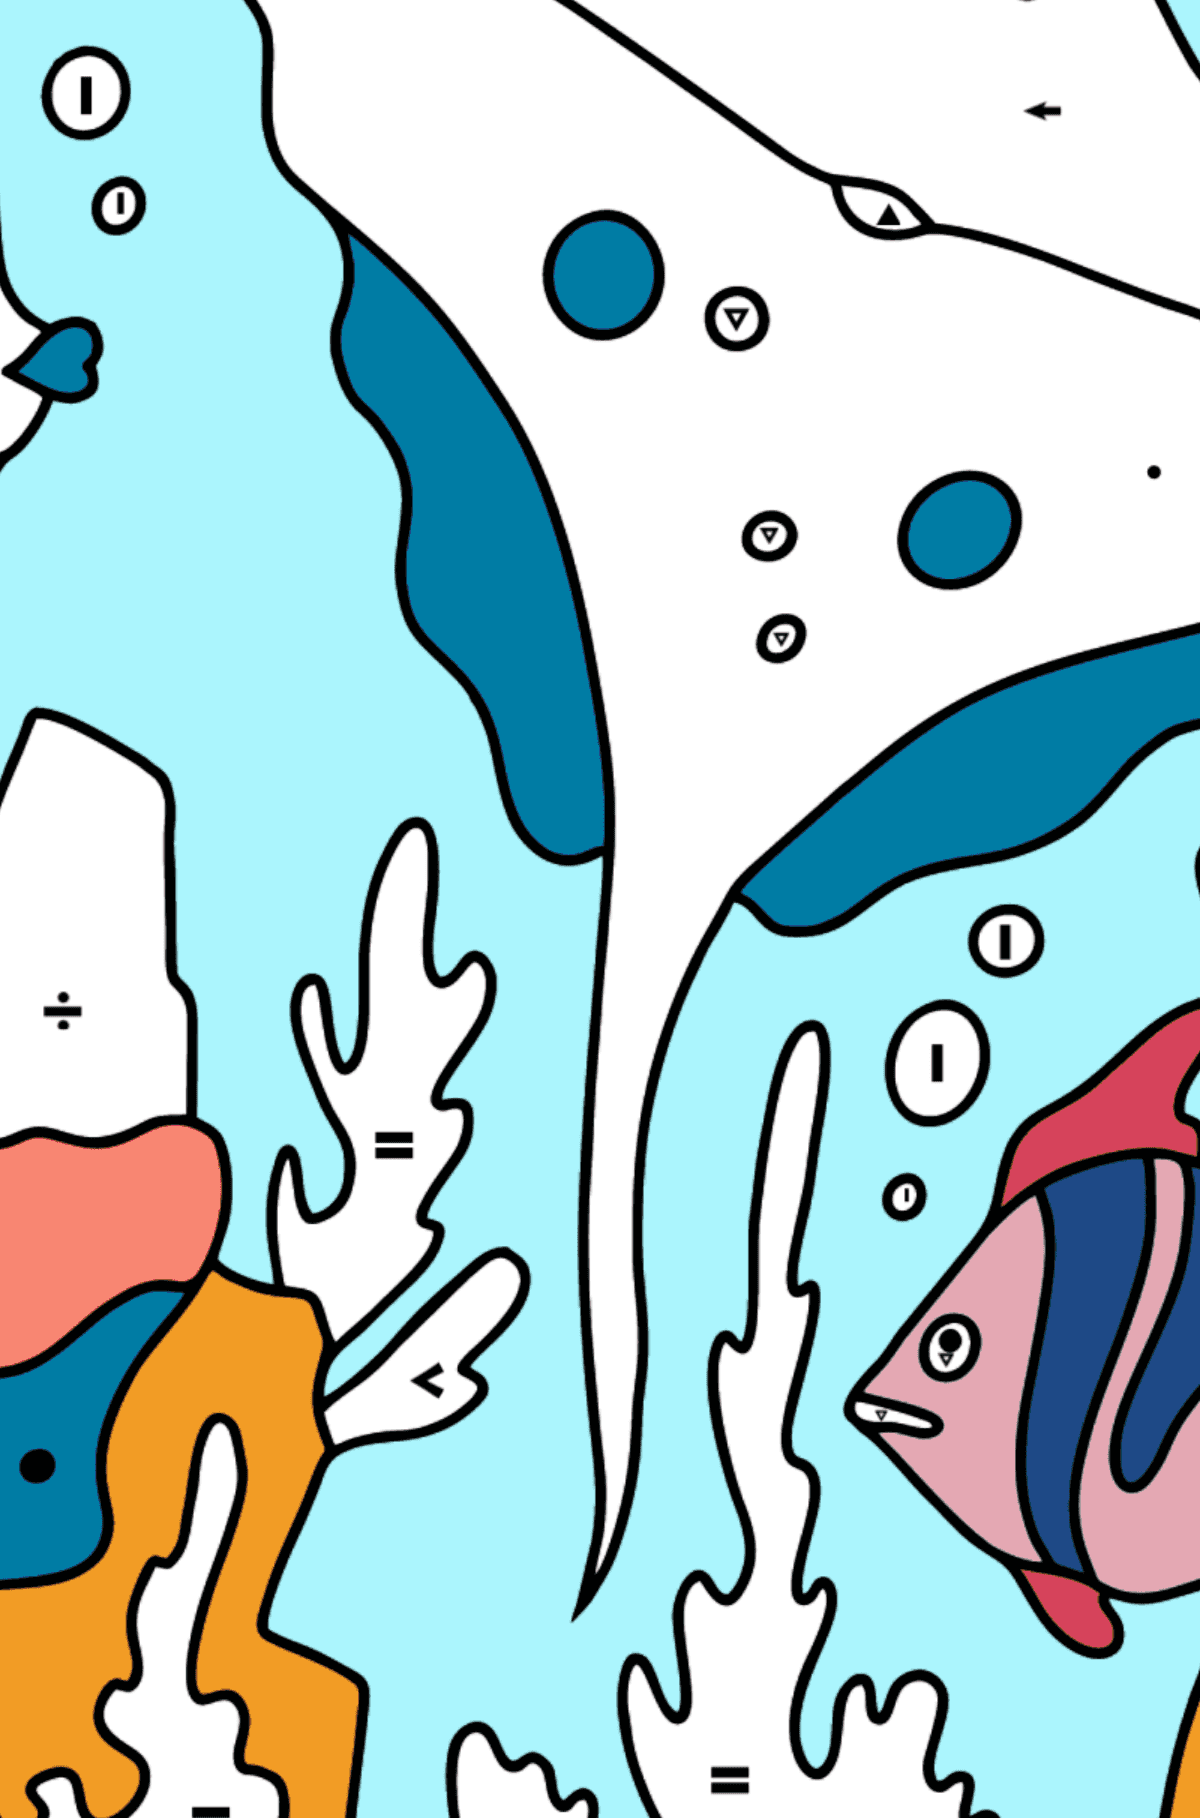 Dibujo para Colorear - Los Peces Nadan al Lado de una Raya - Colorear por Símbolos para Niños